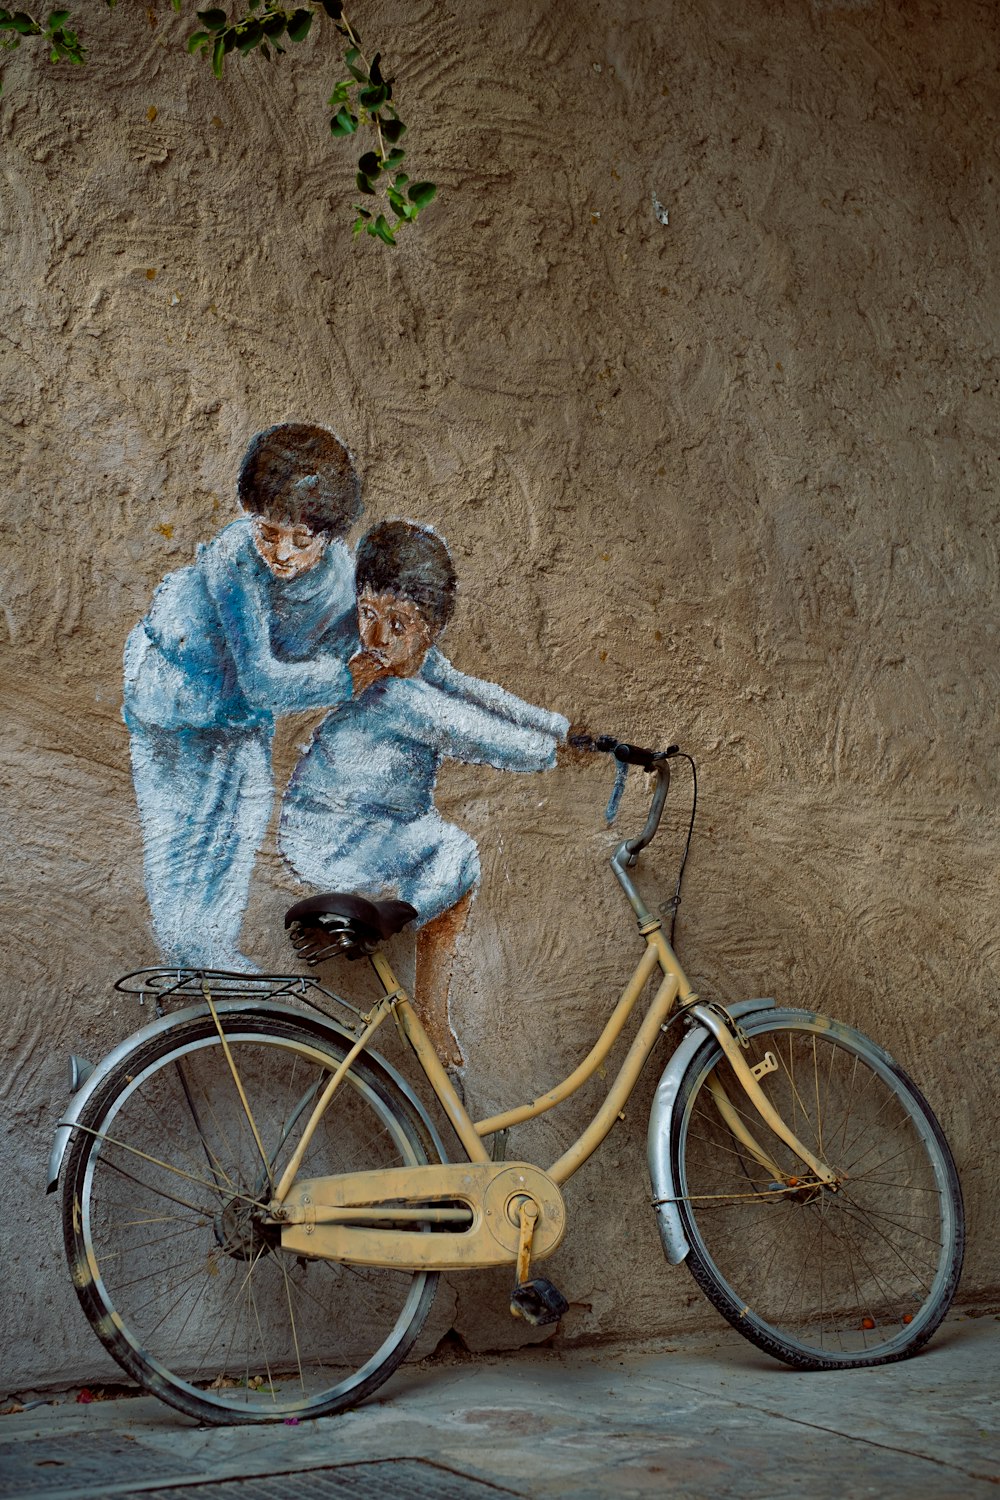 Bicicletas En Bicicleta Del Niño. La Muchacha Monta La Bicicleta. Chica Con  Gafas De Sol De Color Deporte. Ciclista Mirar Hacia Arriba. Fotos,  retratos, imágenes y fotografía de archivo libres de derecho.